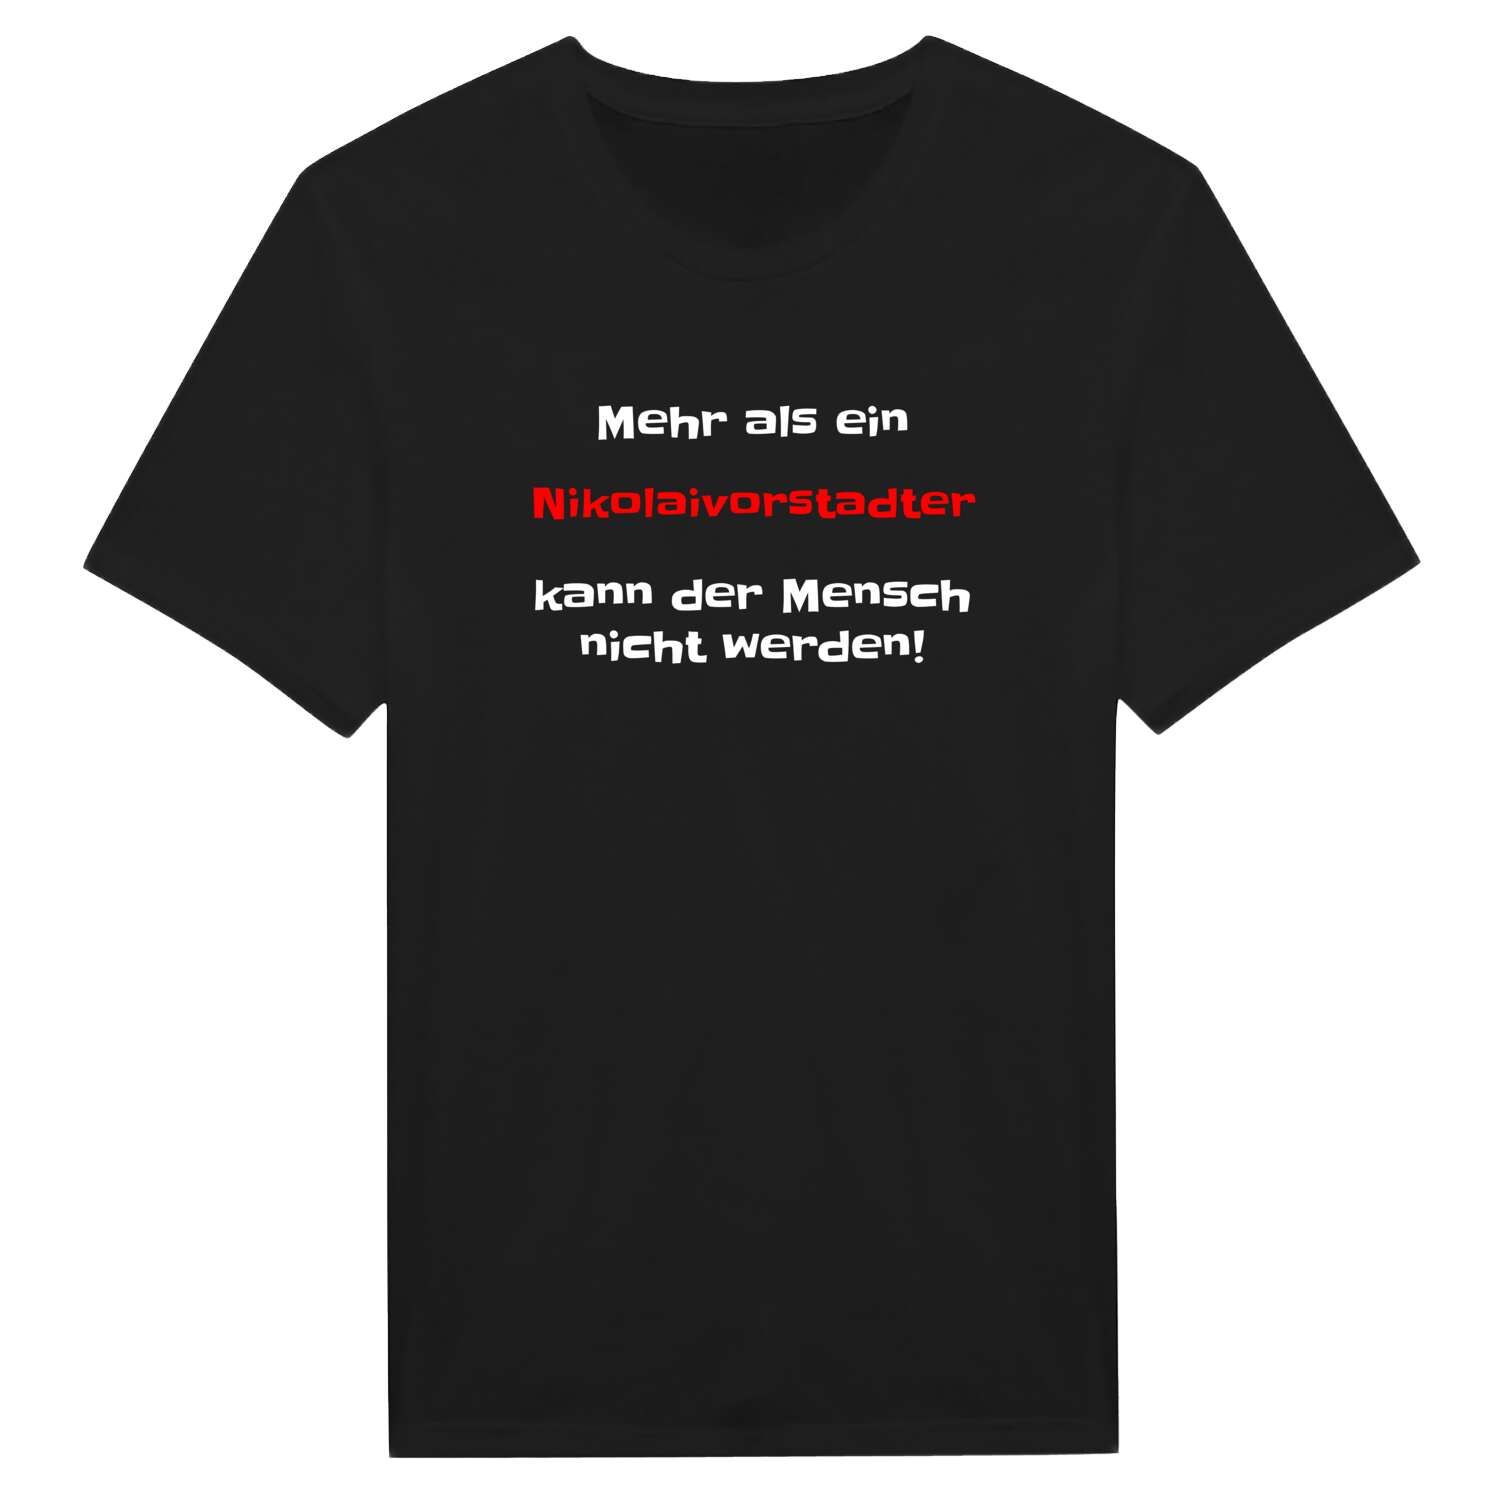 Nikolaivorstadt T-Shirt »Mehr als ein«